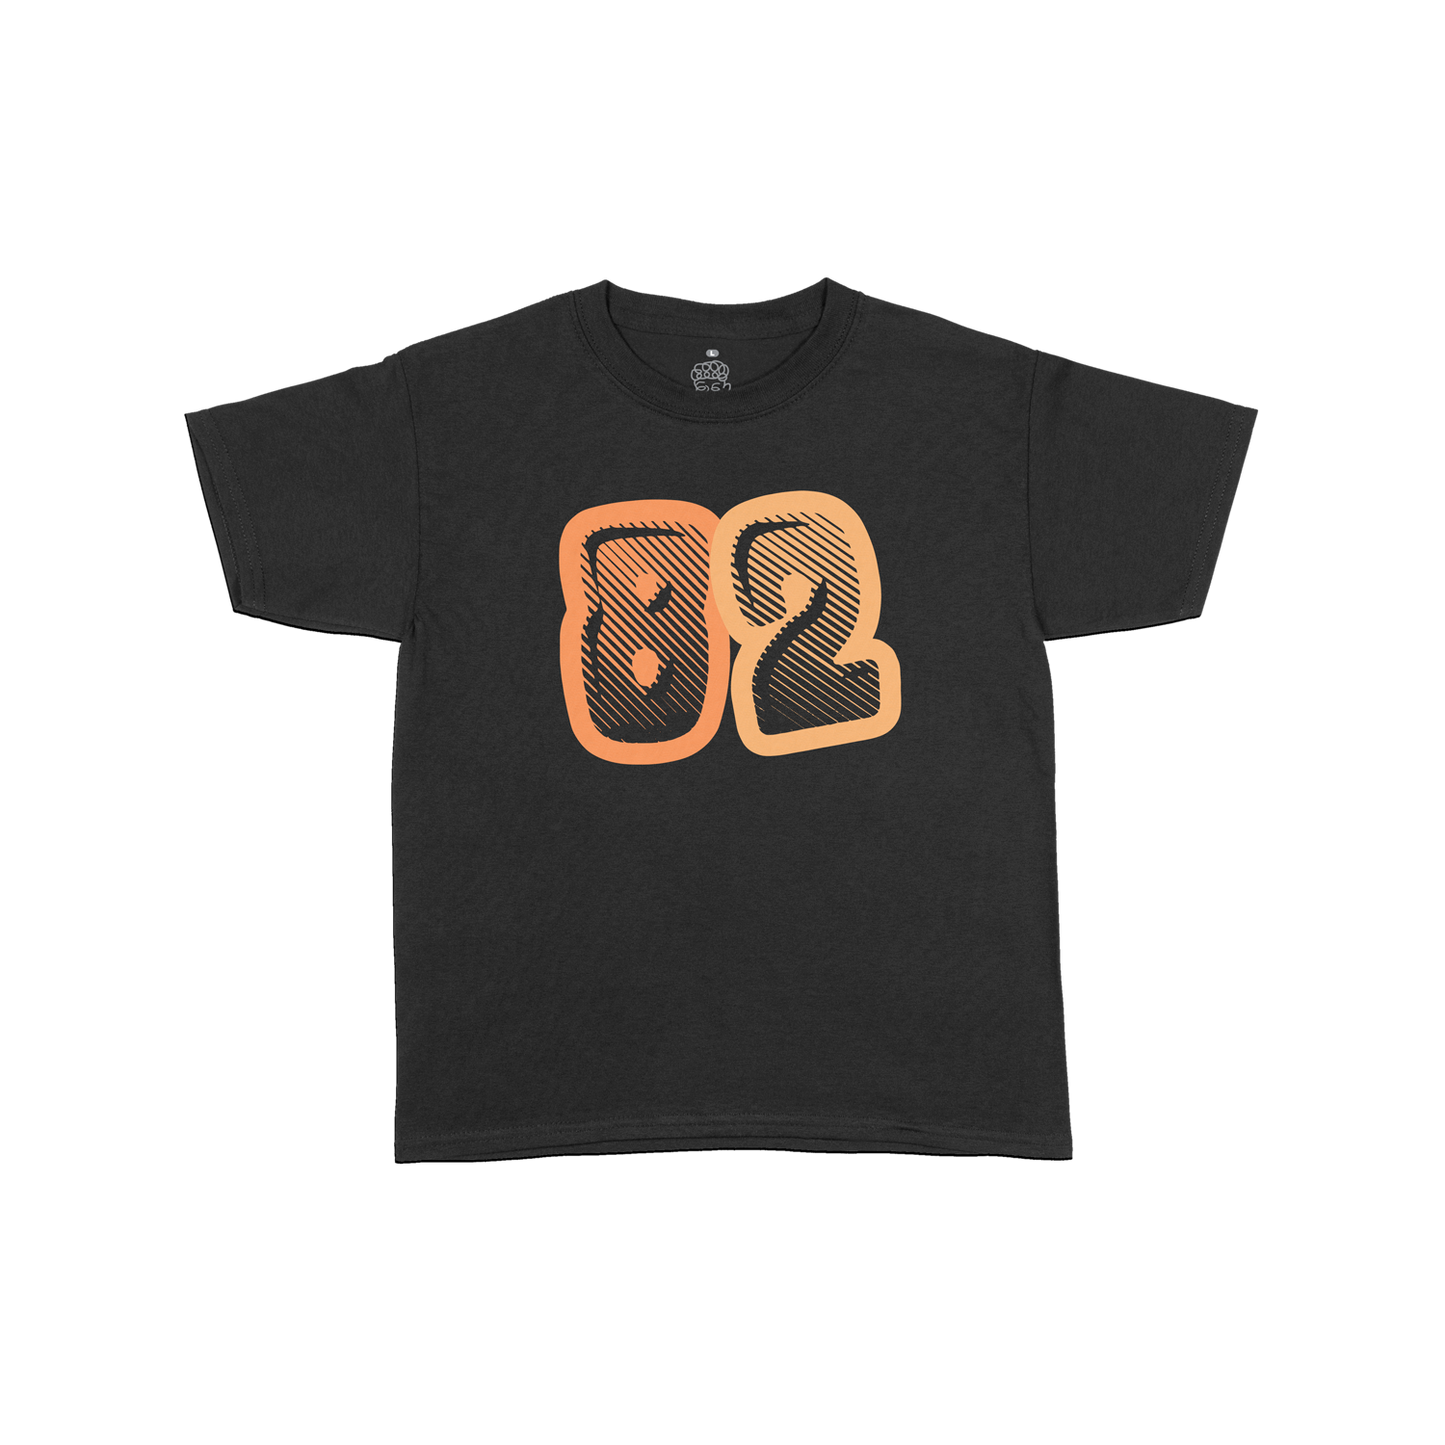 Daniyel - 82 T-Shirt